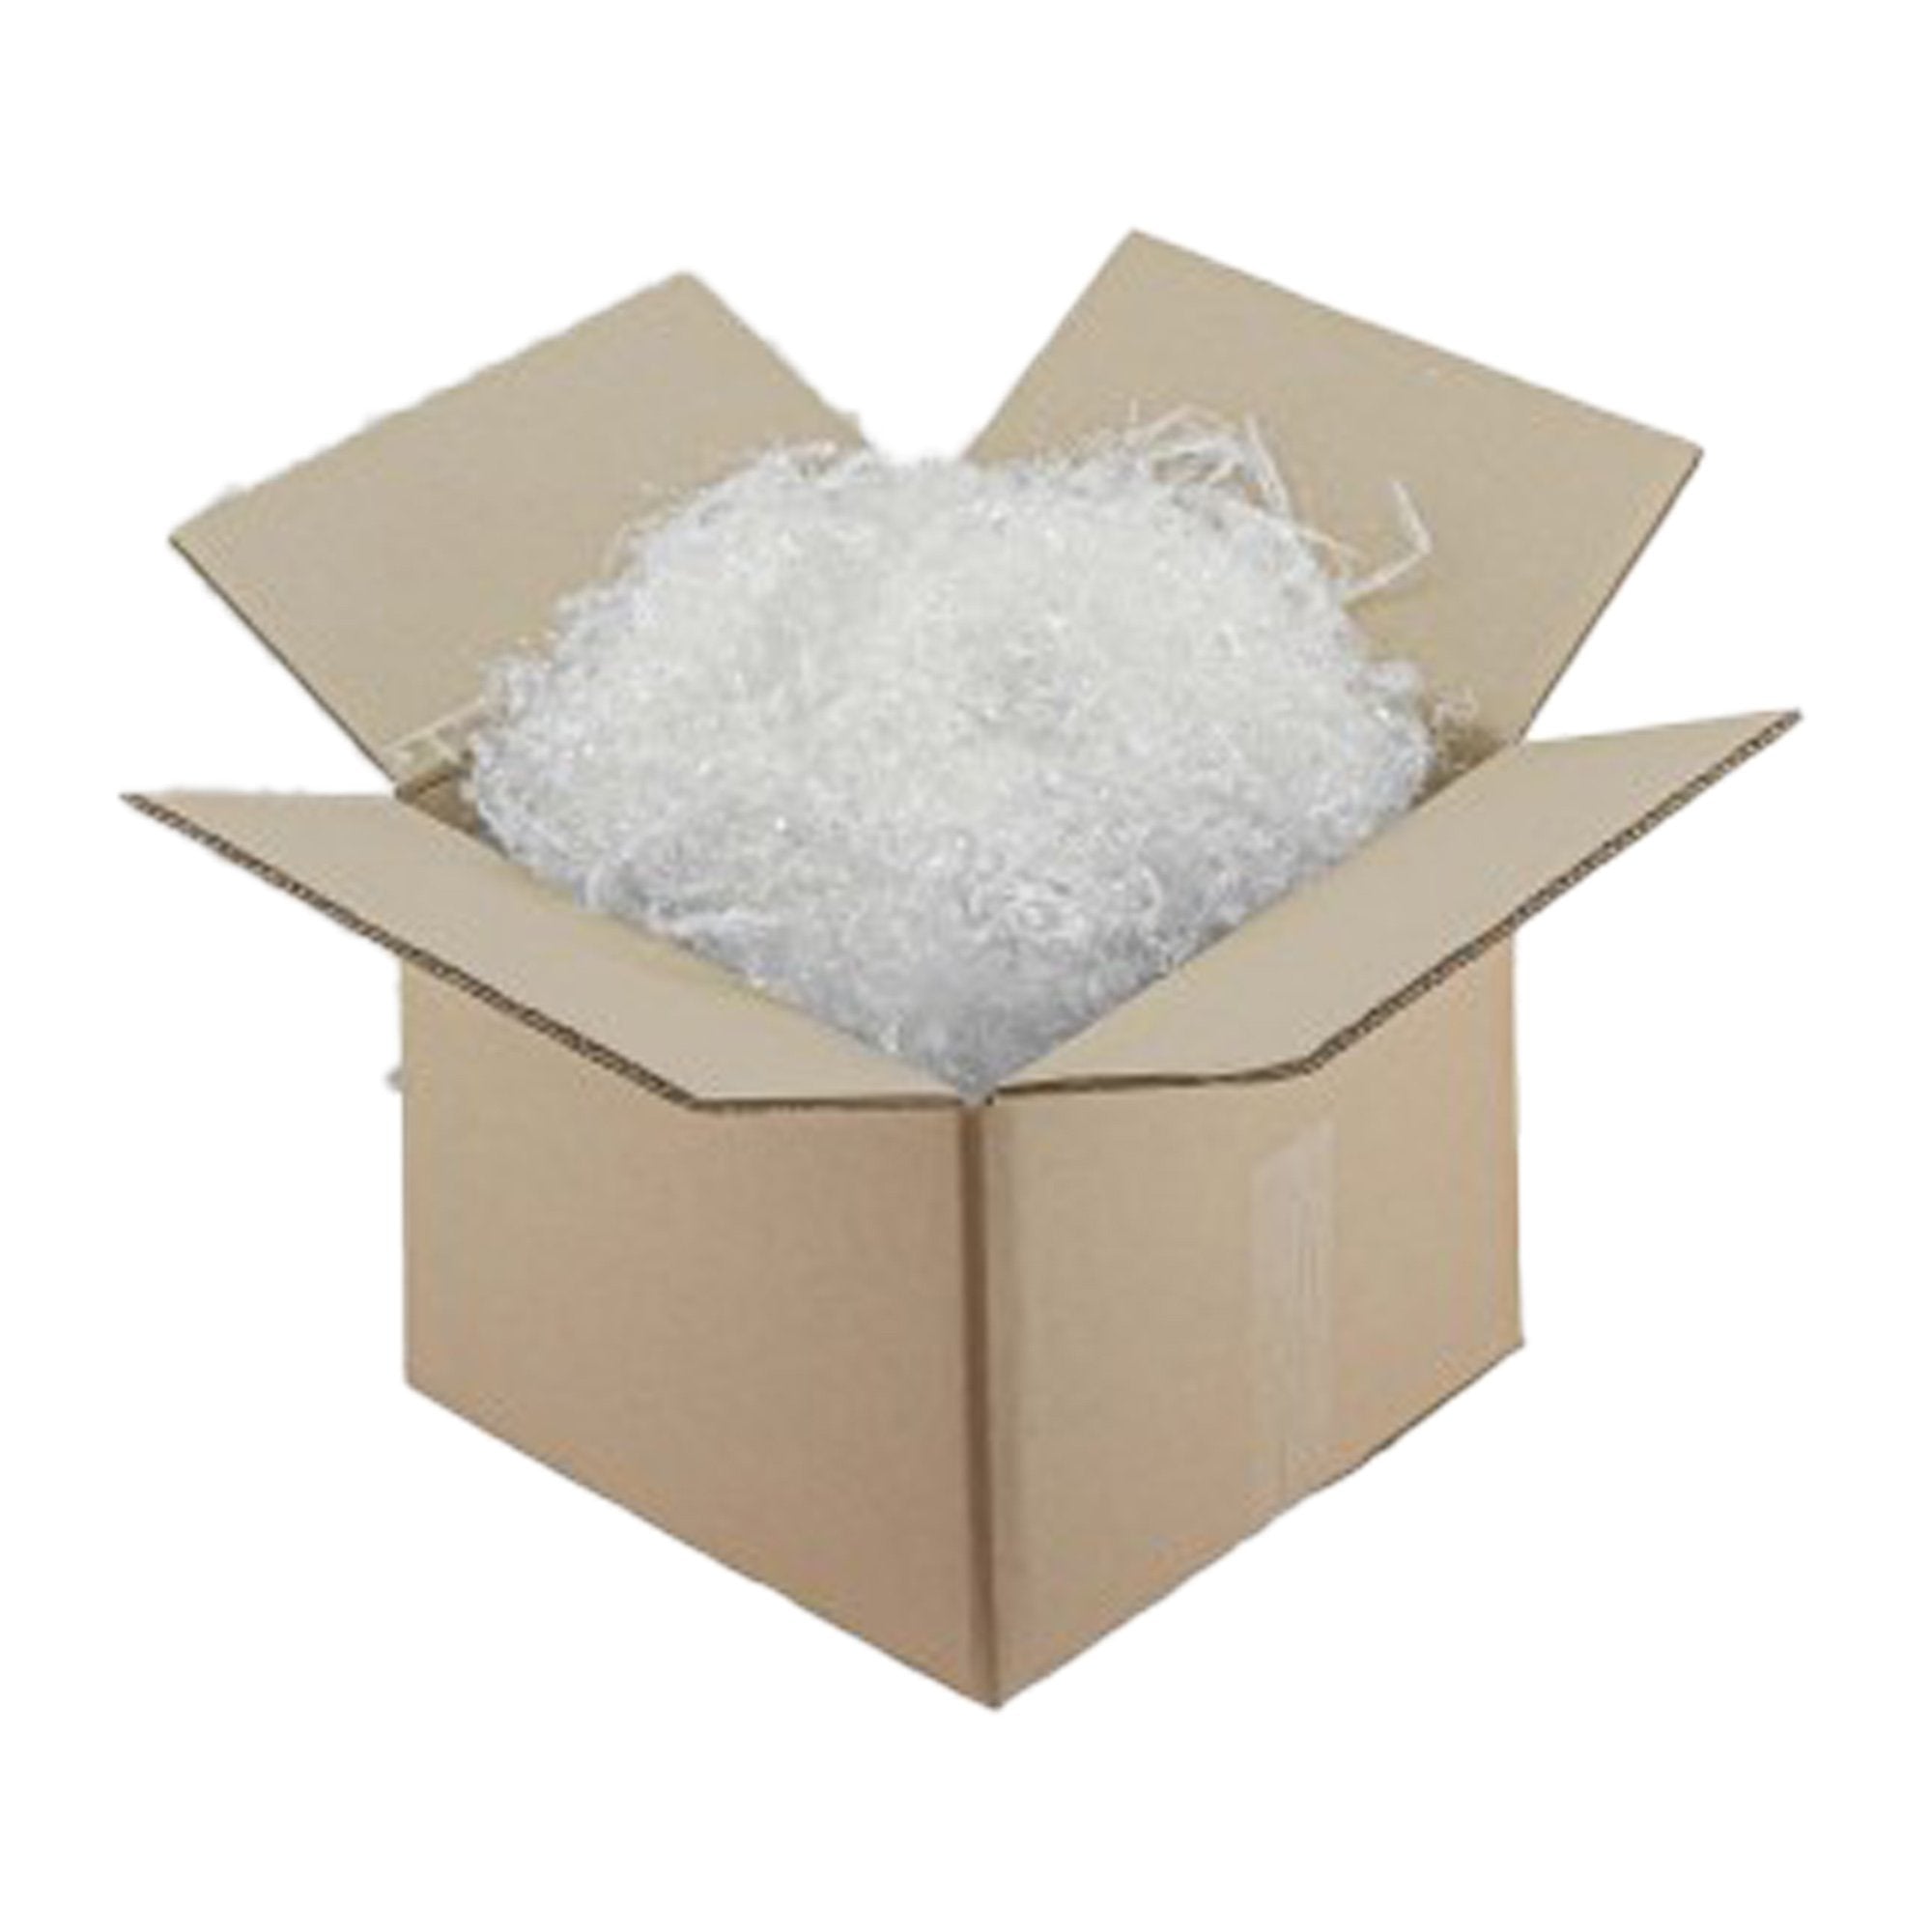 polyedra-scatola-trucciolo-imballaggio-polipropilene-trasparente-biodegradabile-1kg